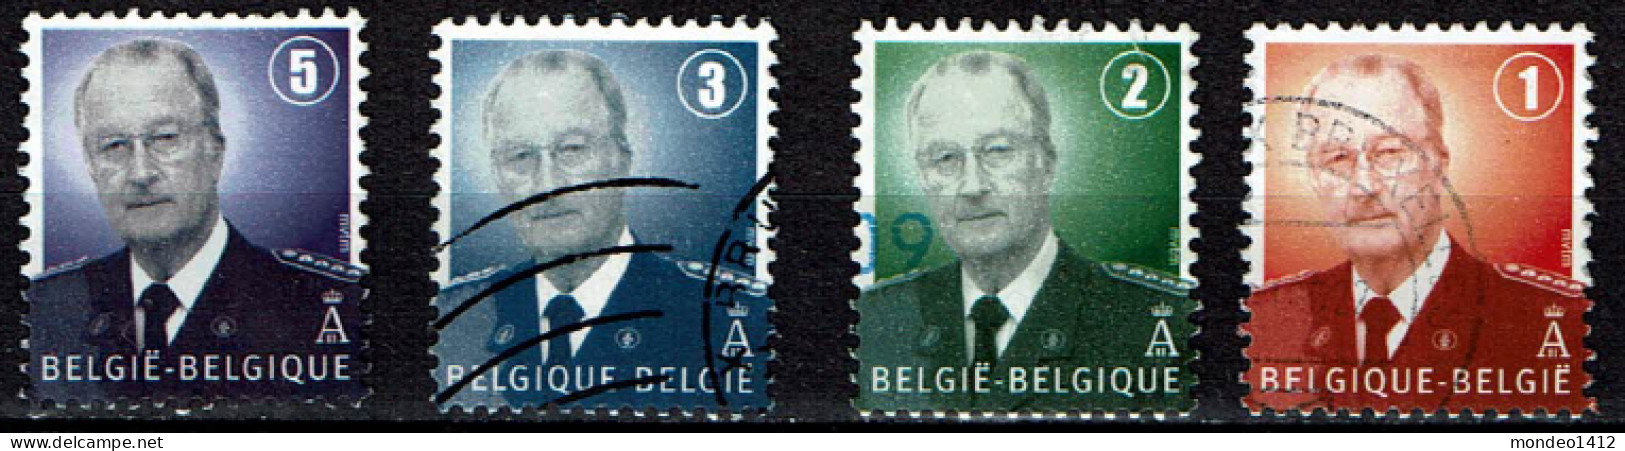 België OBP 3695 3696 3697 3698 - Dynastie Roi King Koning Albert II MVTM - Used Stamps